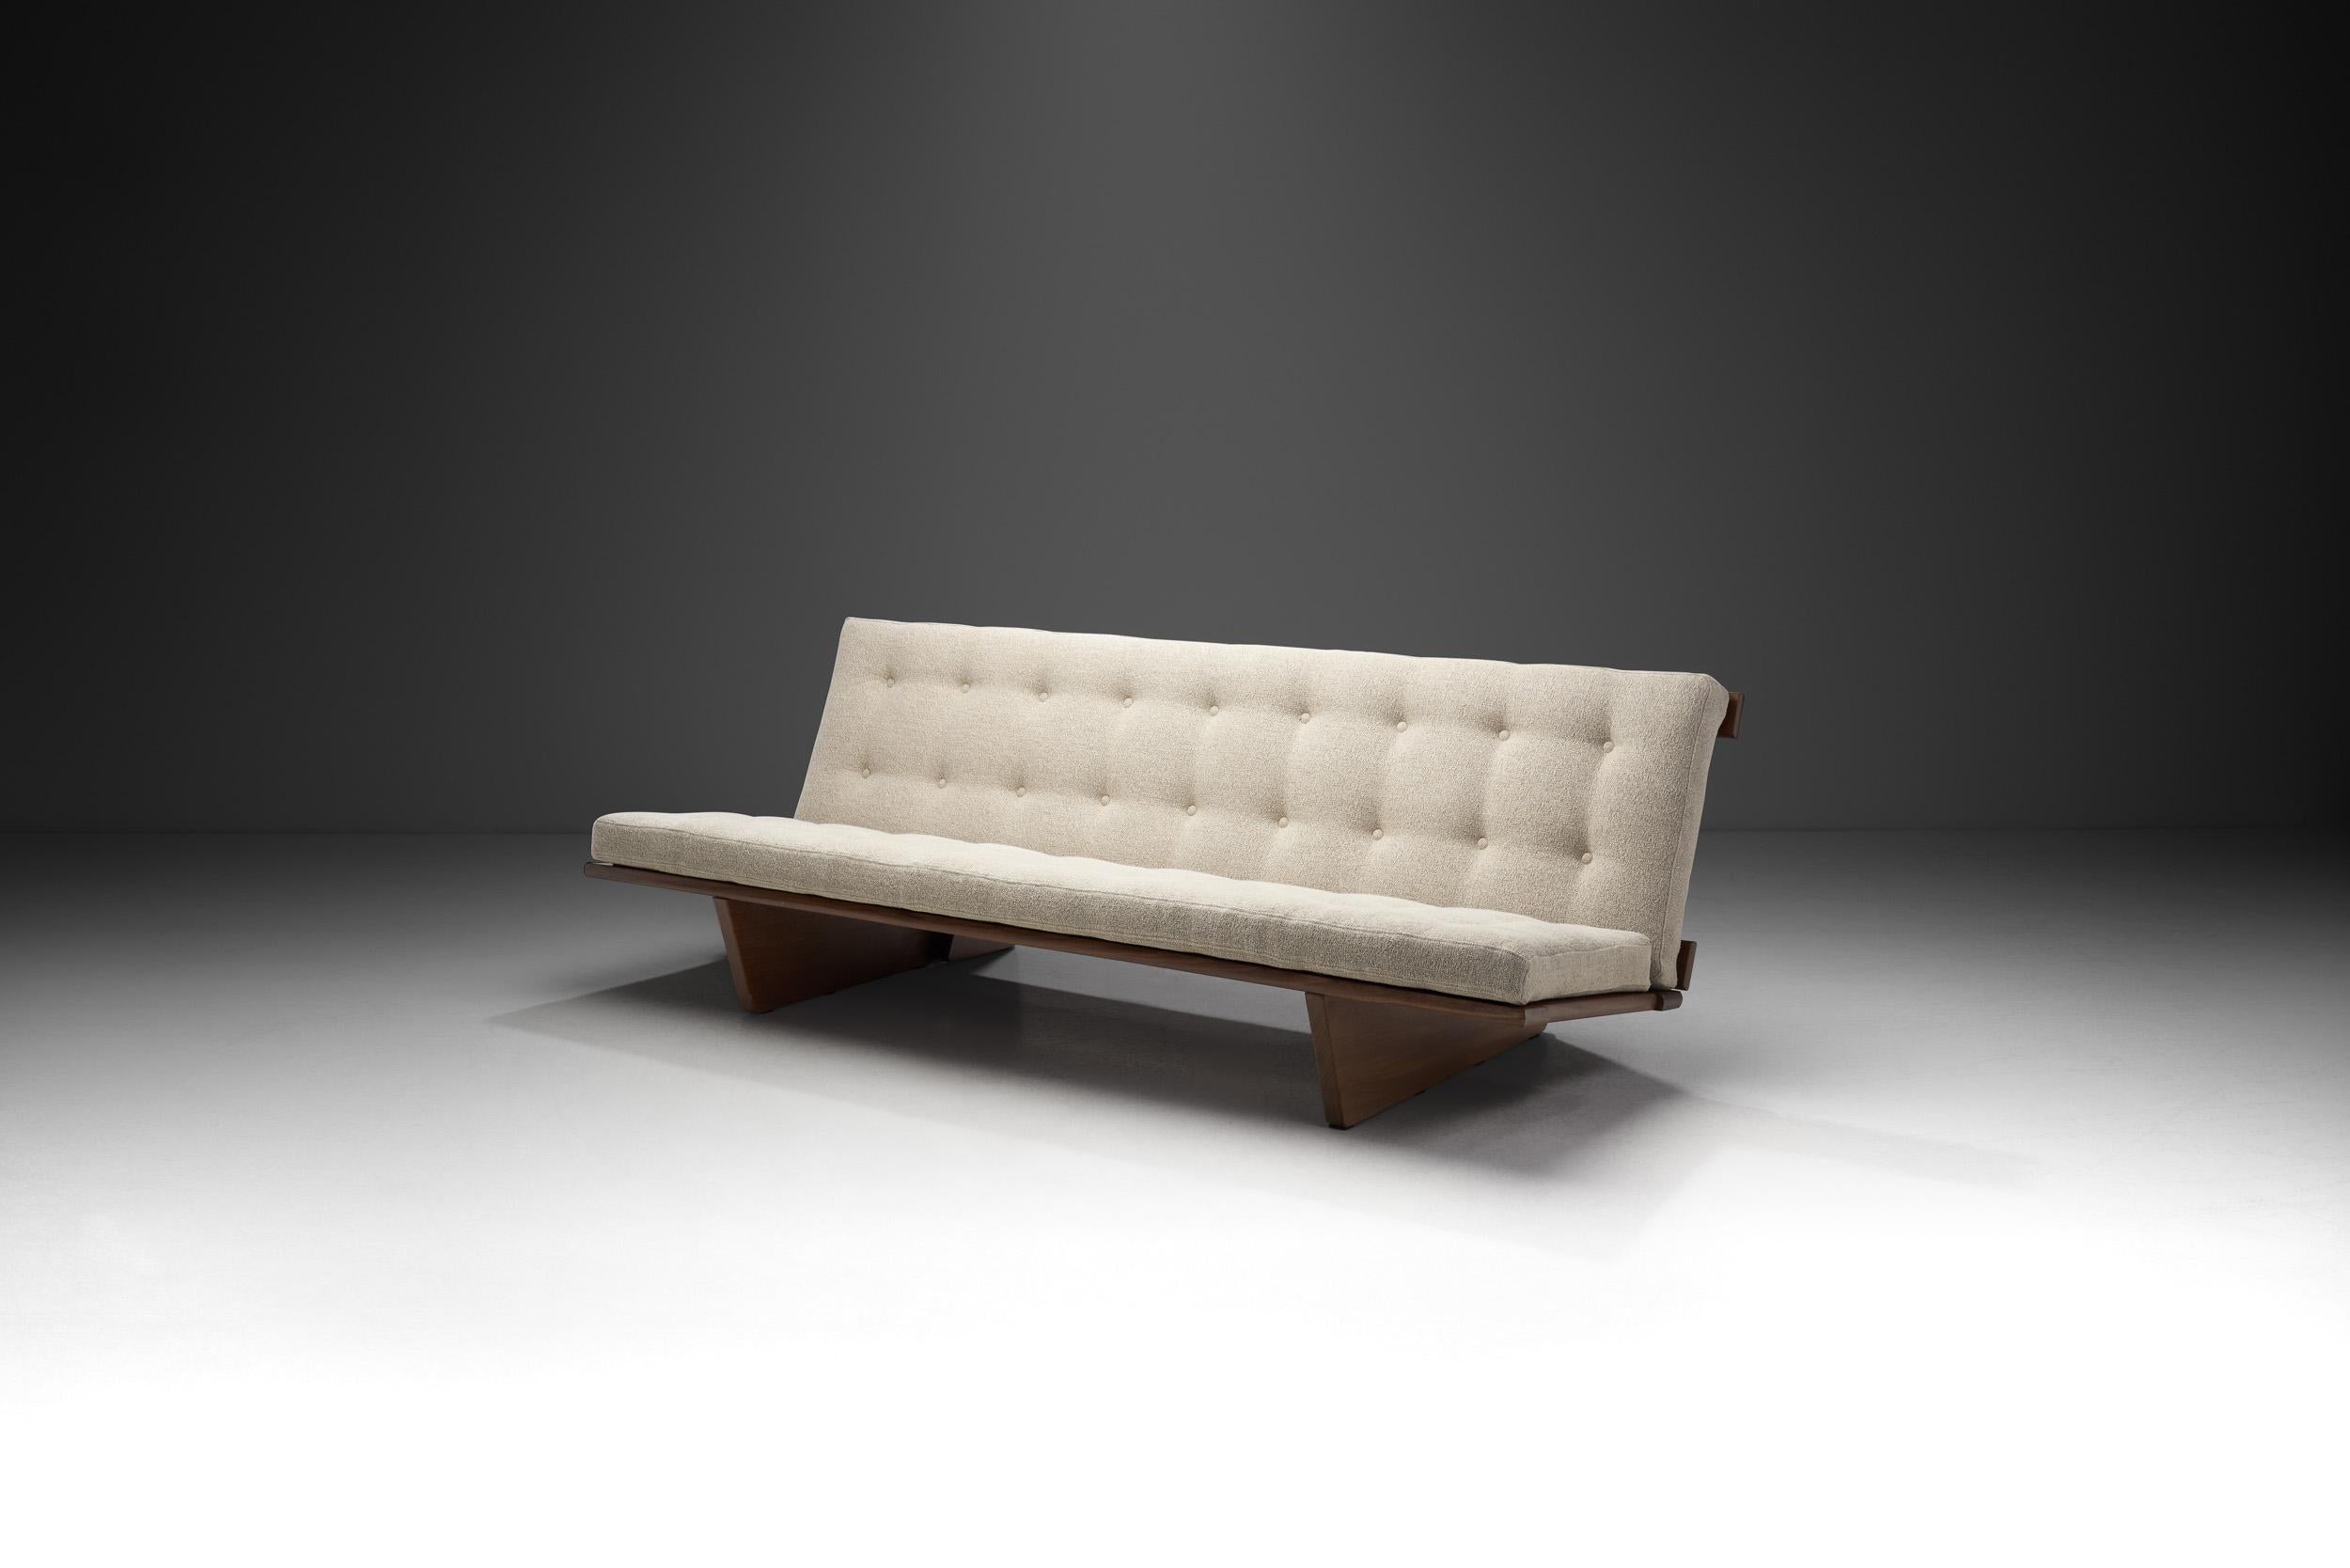 Dieses seltene Sofa und Tagesbett wurde vom dänischen Designer Harbo Sølvsten entworfen und ist ein exquisites Stück dänischer moderner Designgeschichte. Während sich Stücke aus der Midcentury-Ära im Allgemeinen durch ein klares Design und eine